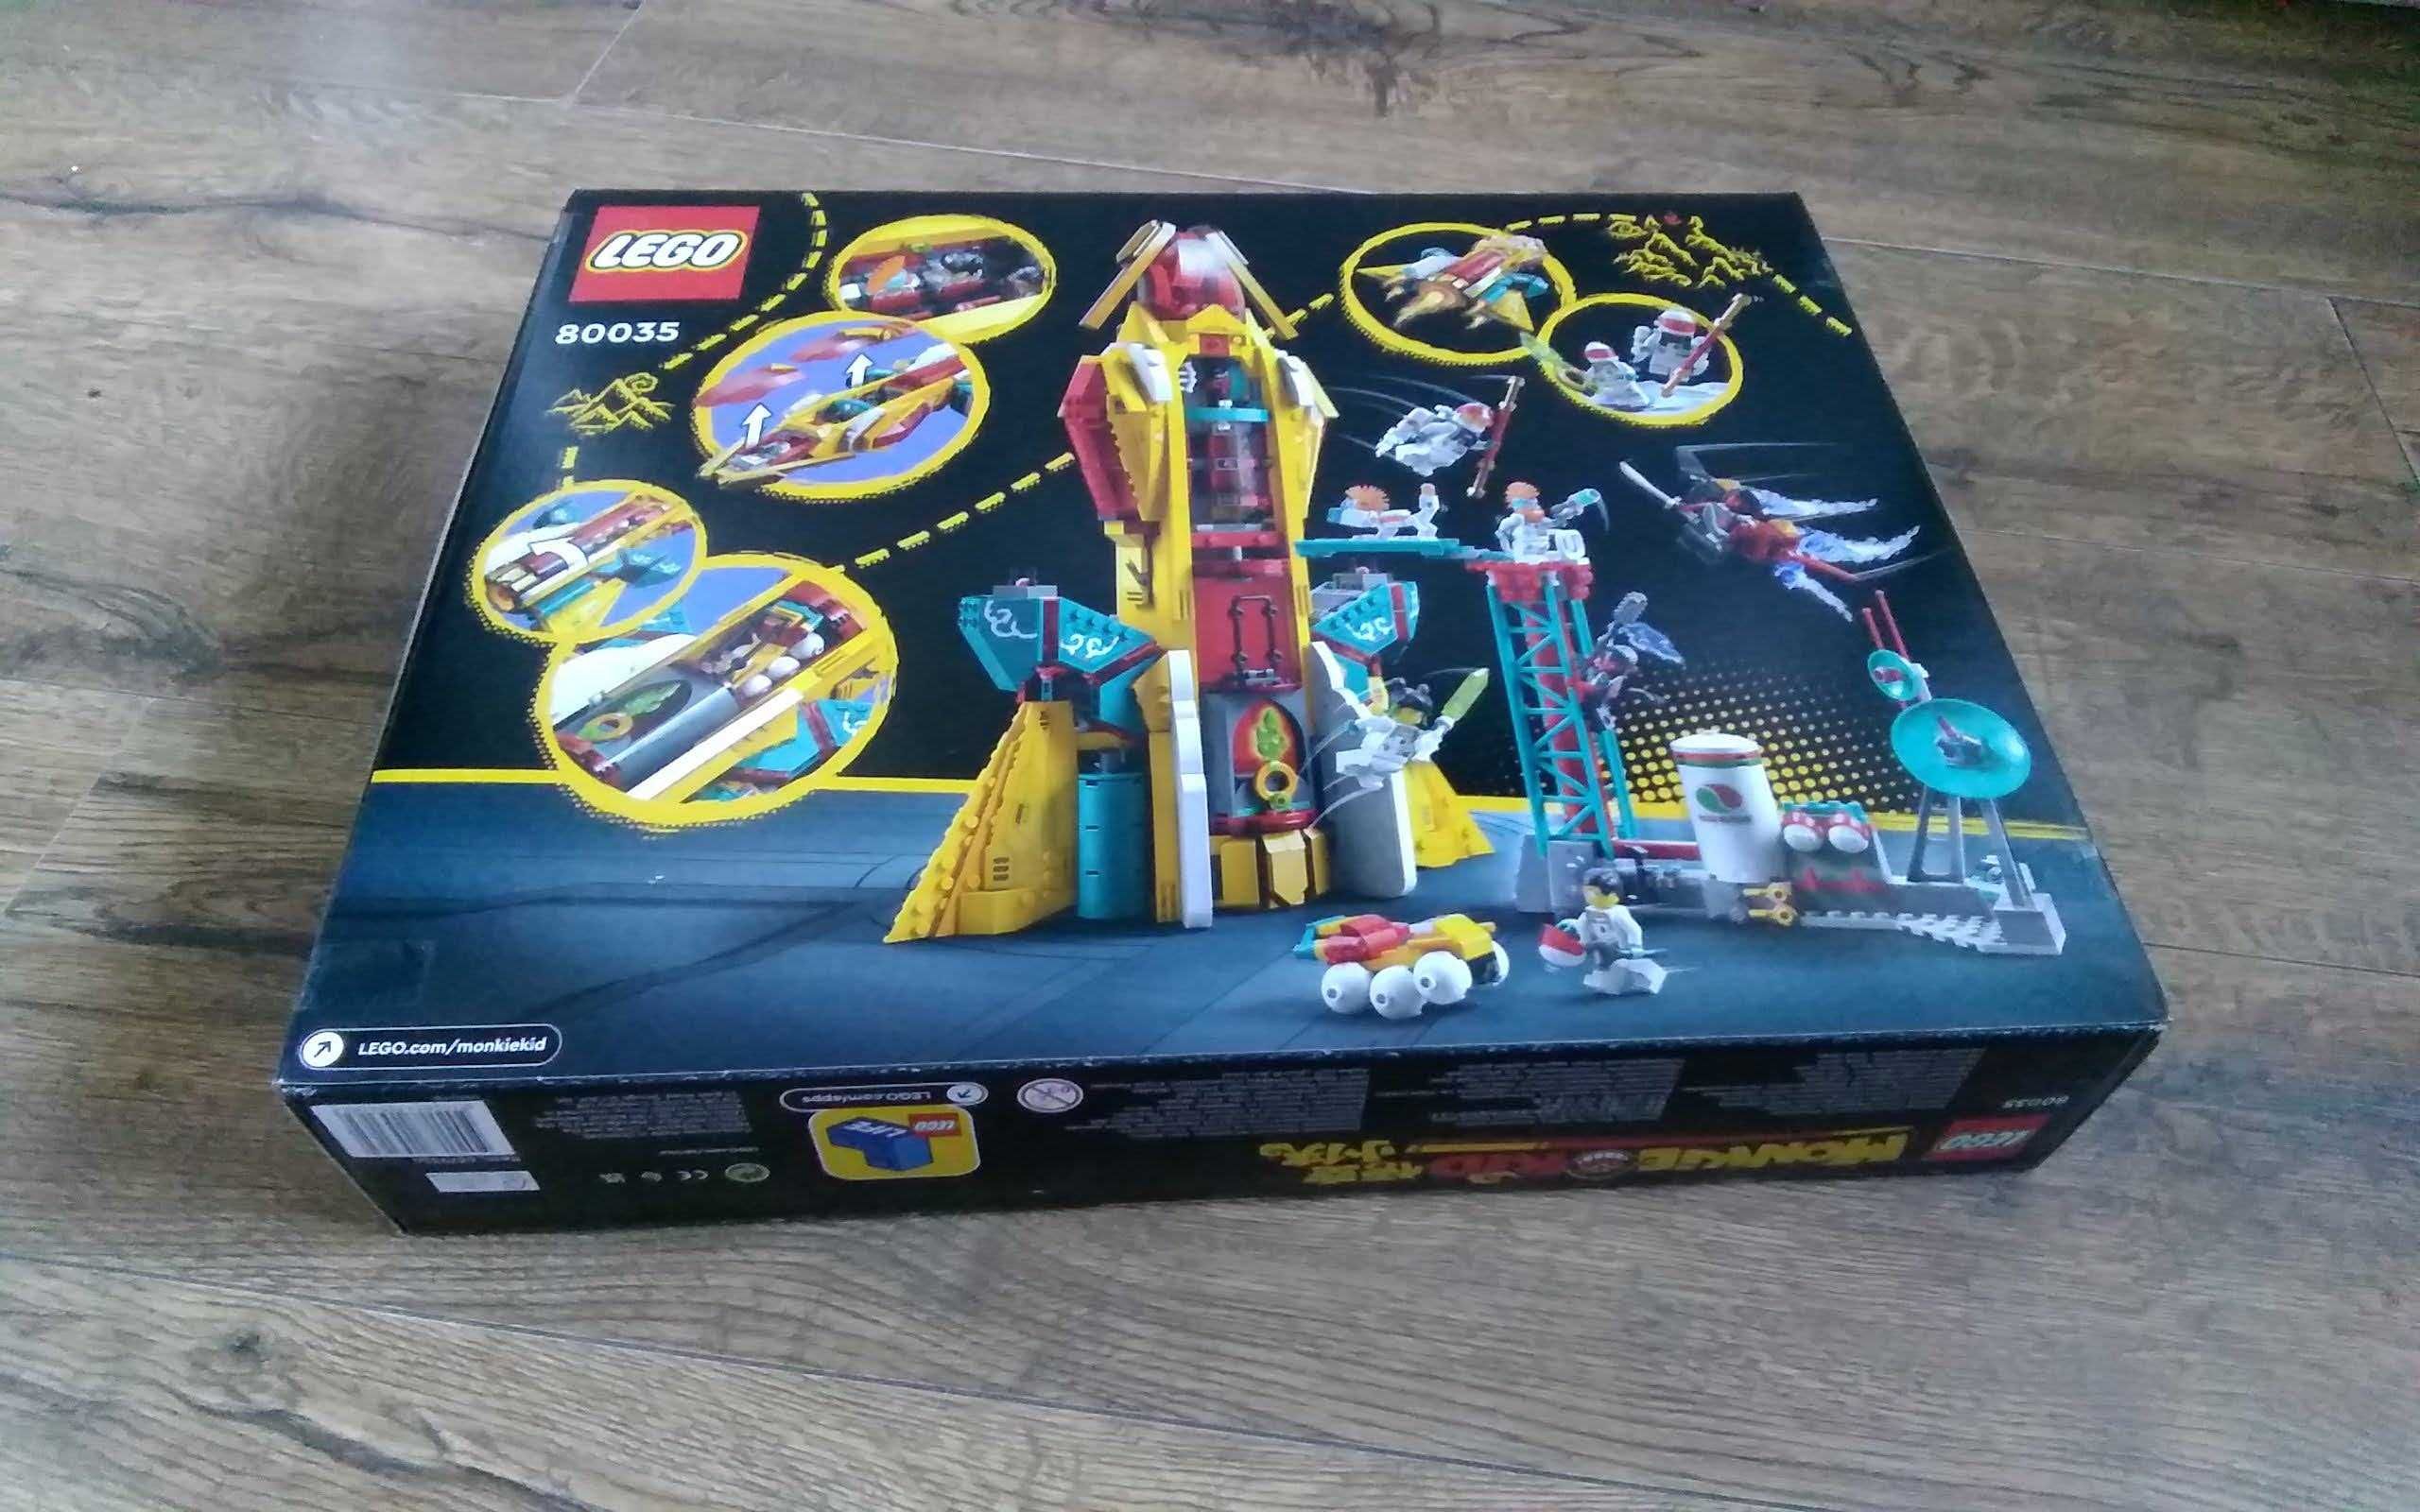 LEGO Monkie Kid 80035 - Galaktyczny Odkrywca